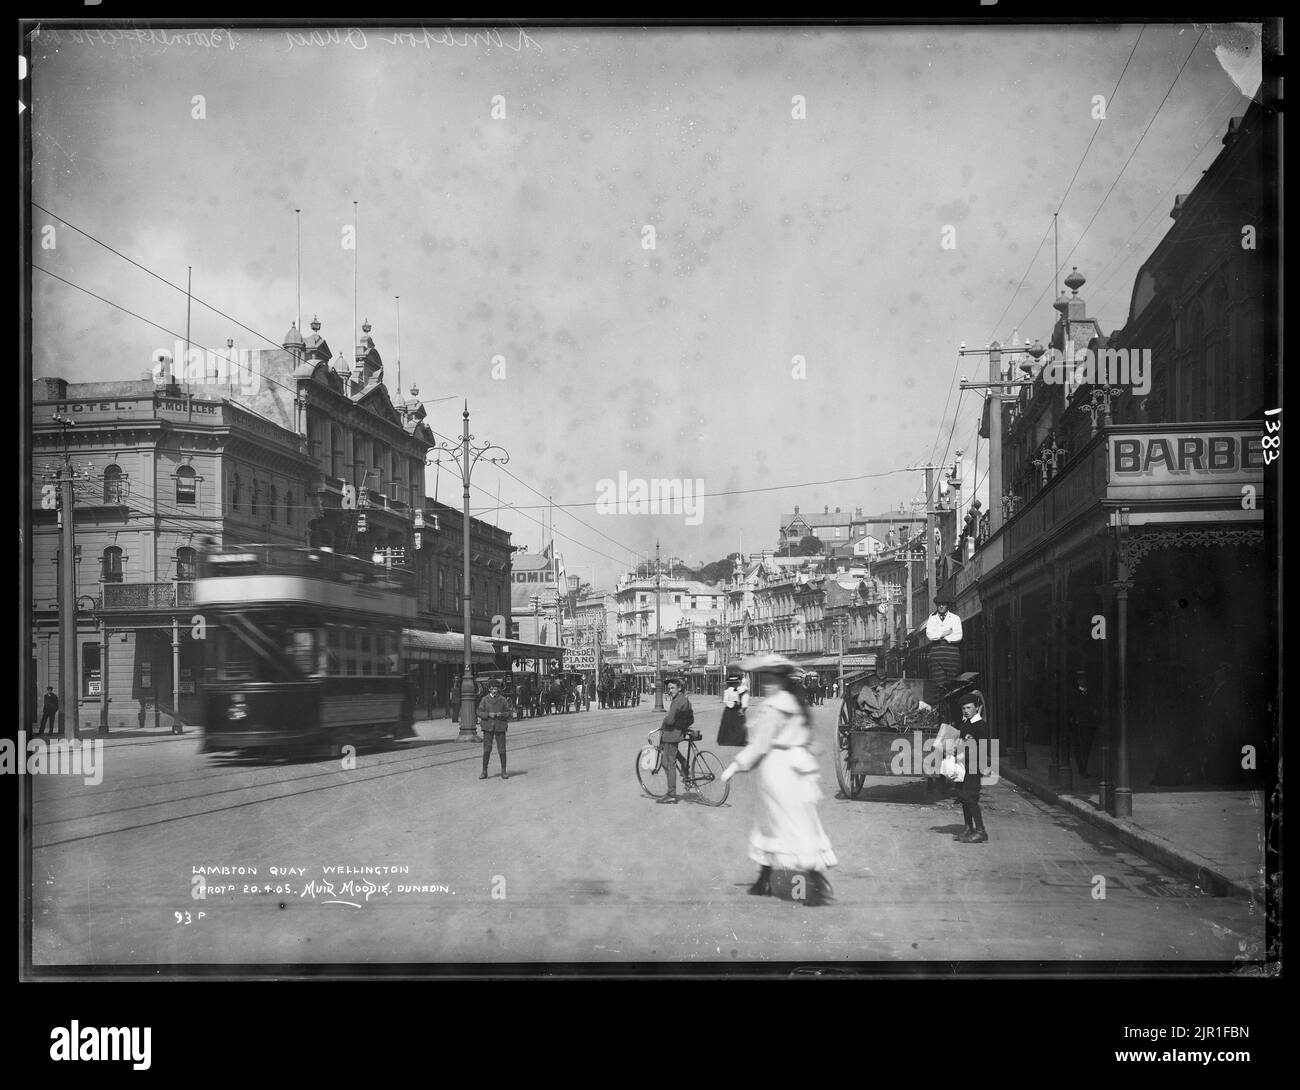 Lambton Quay, Wellington, vers 1905, Dunedin, par Muir & Moodie. Banque D'Images